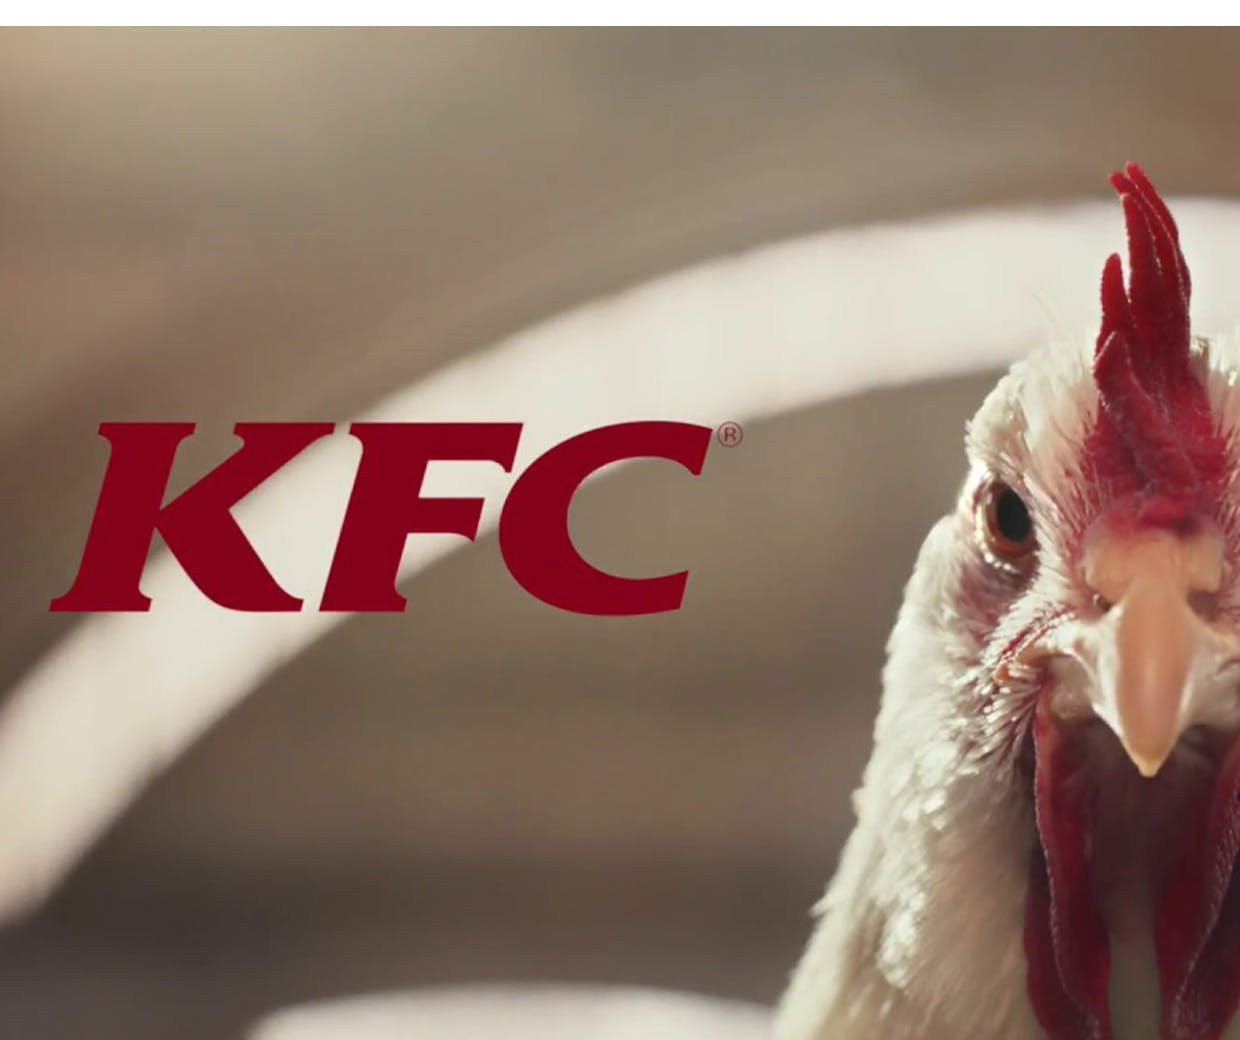 Quán gà không bán gà: Cuộc xử lý khủng hoảng đầy ngoạn mục của KFC khi tự biến tên thương hiệu thành niềm vui cho khách hàng - Ảnh 1.